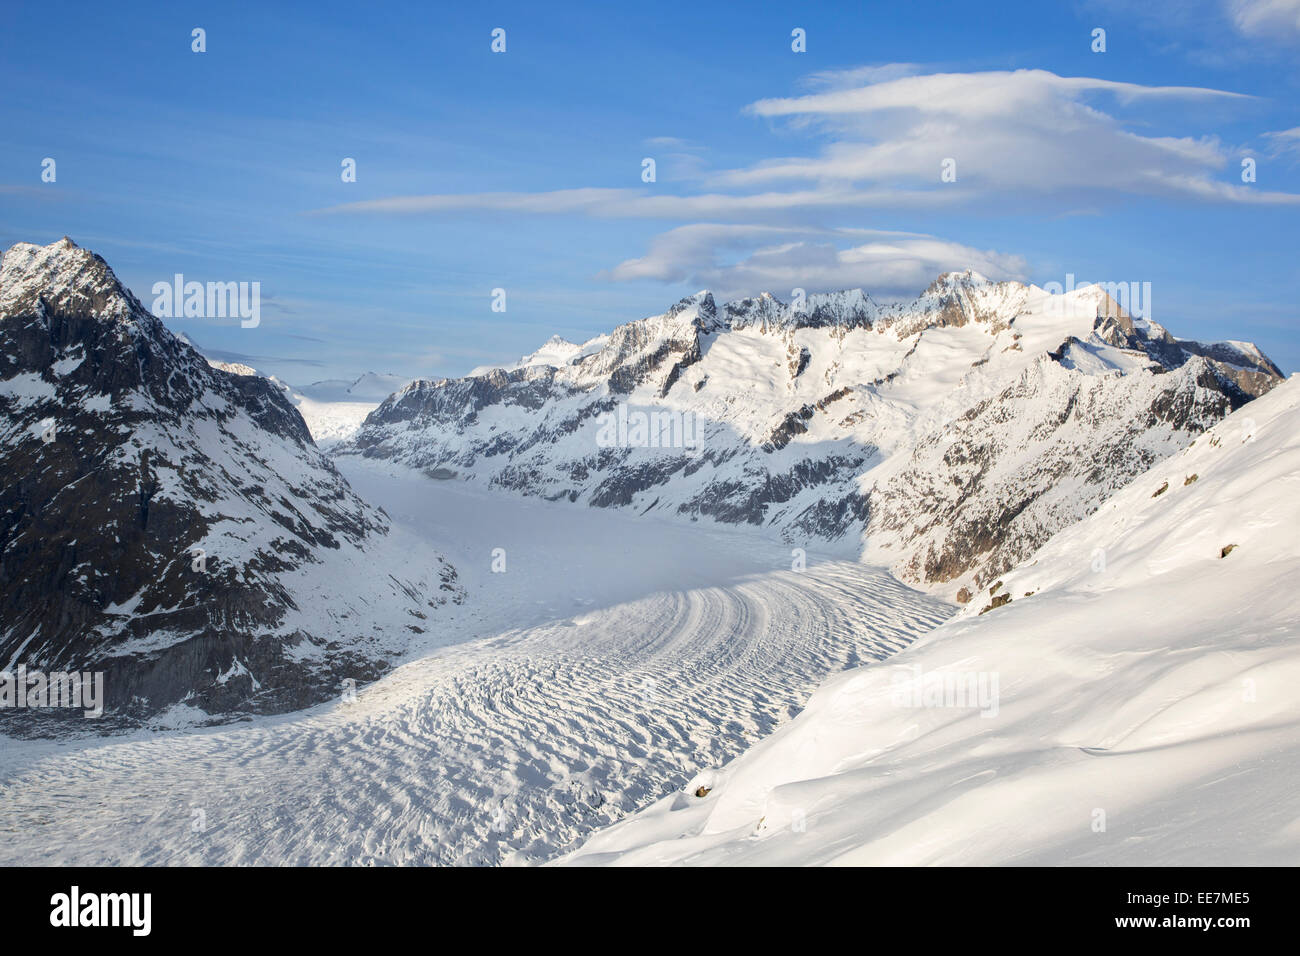 Vistas de montañas cubiertas de nieve en invierno que rodean el Glaciar Aletsch suizo, el mayor glaciar de los Alpes, Suiza Foto de stock